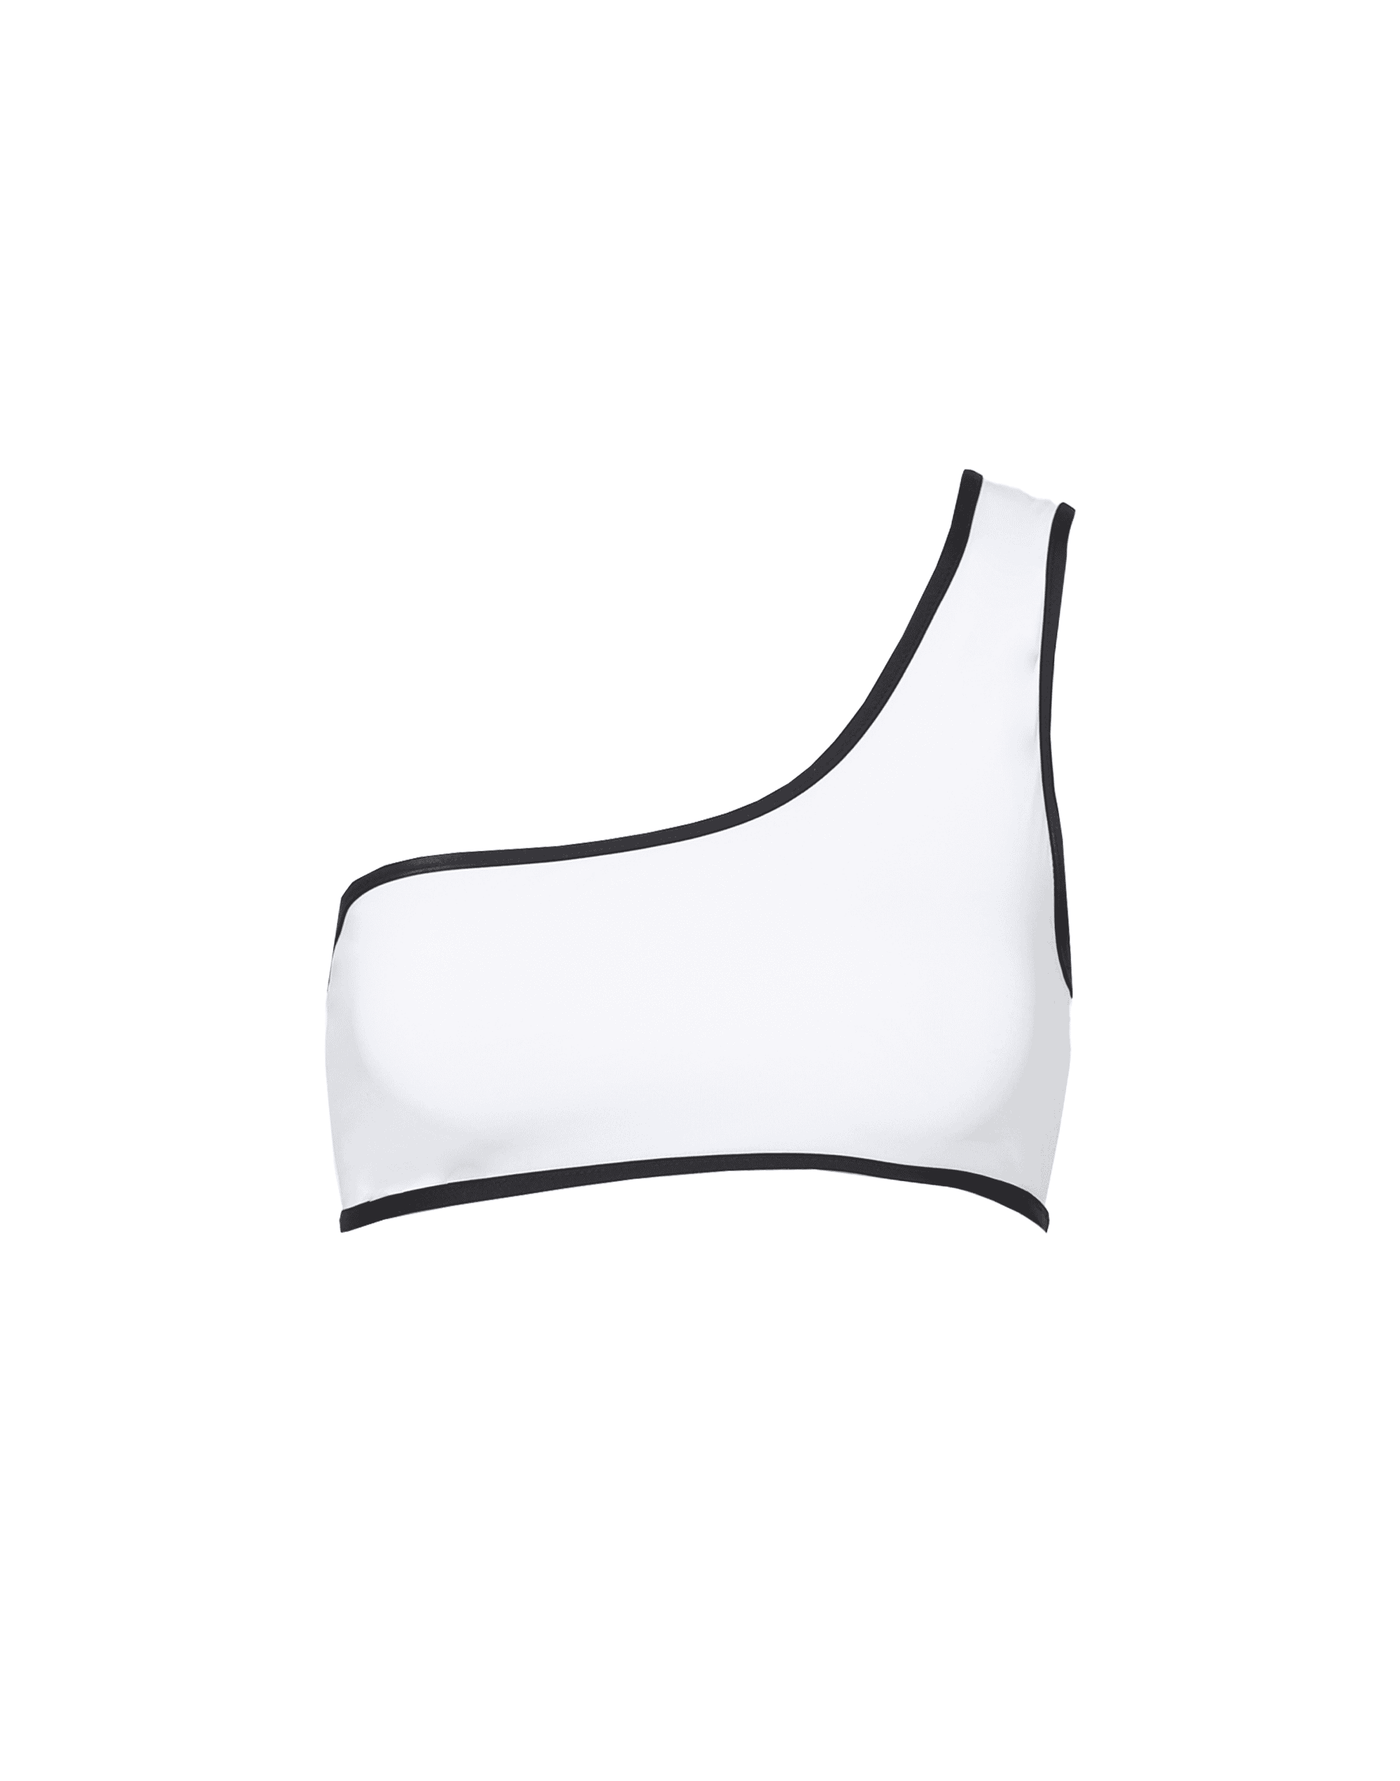 Anchors Away Bikini Top (Black/White) - Reversible One Shoulder Bikini Top - Women's Swim - Charcoal Clothing mix-and-match